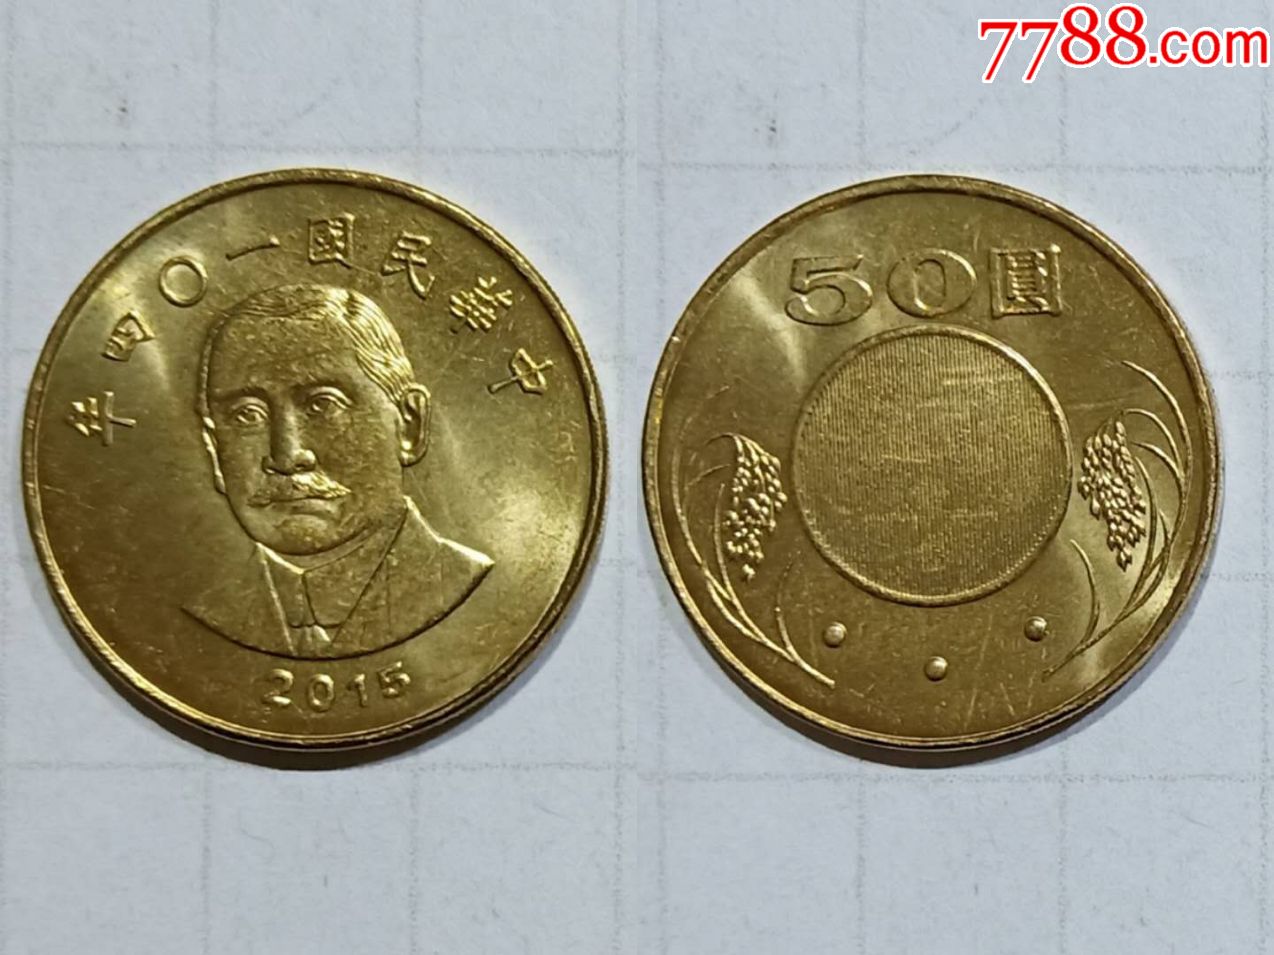 台湾钱币50元硬币1枚2015年实图